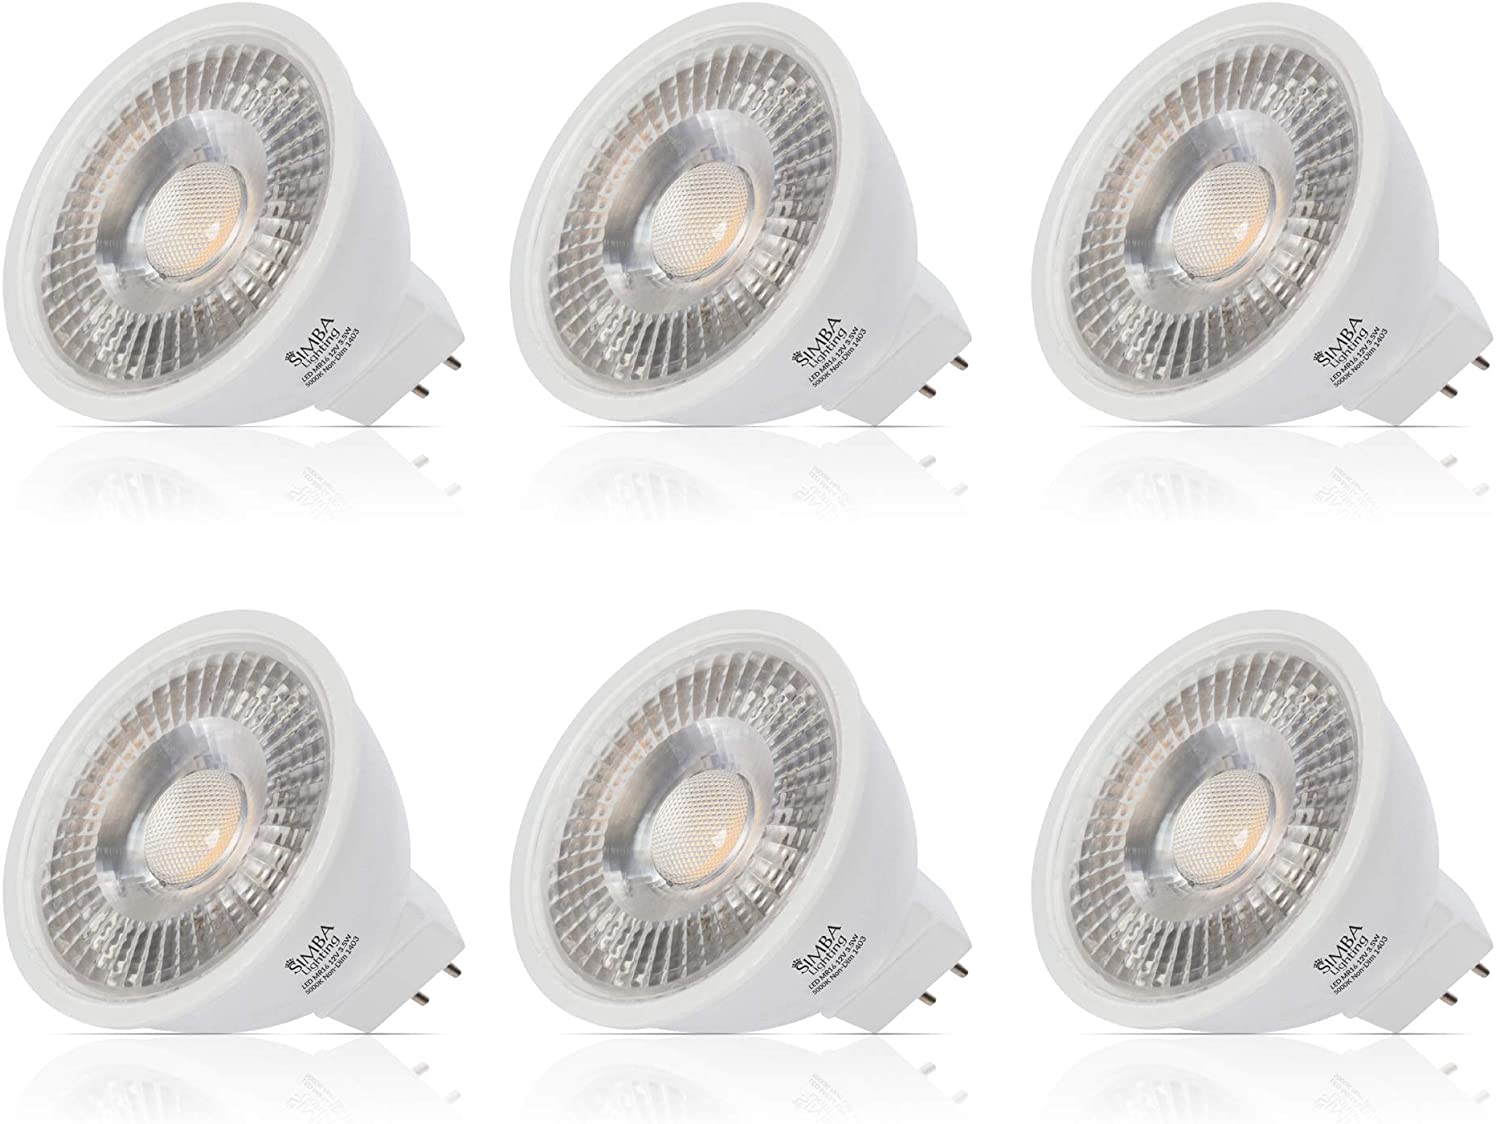 Simba Lighting LED MR16 3.5W 12V Light Bulb (6 Pack) 20W Halogen Spotlight Replacement for Landscape